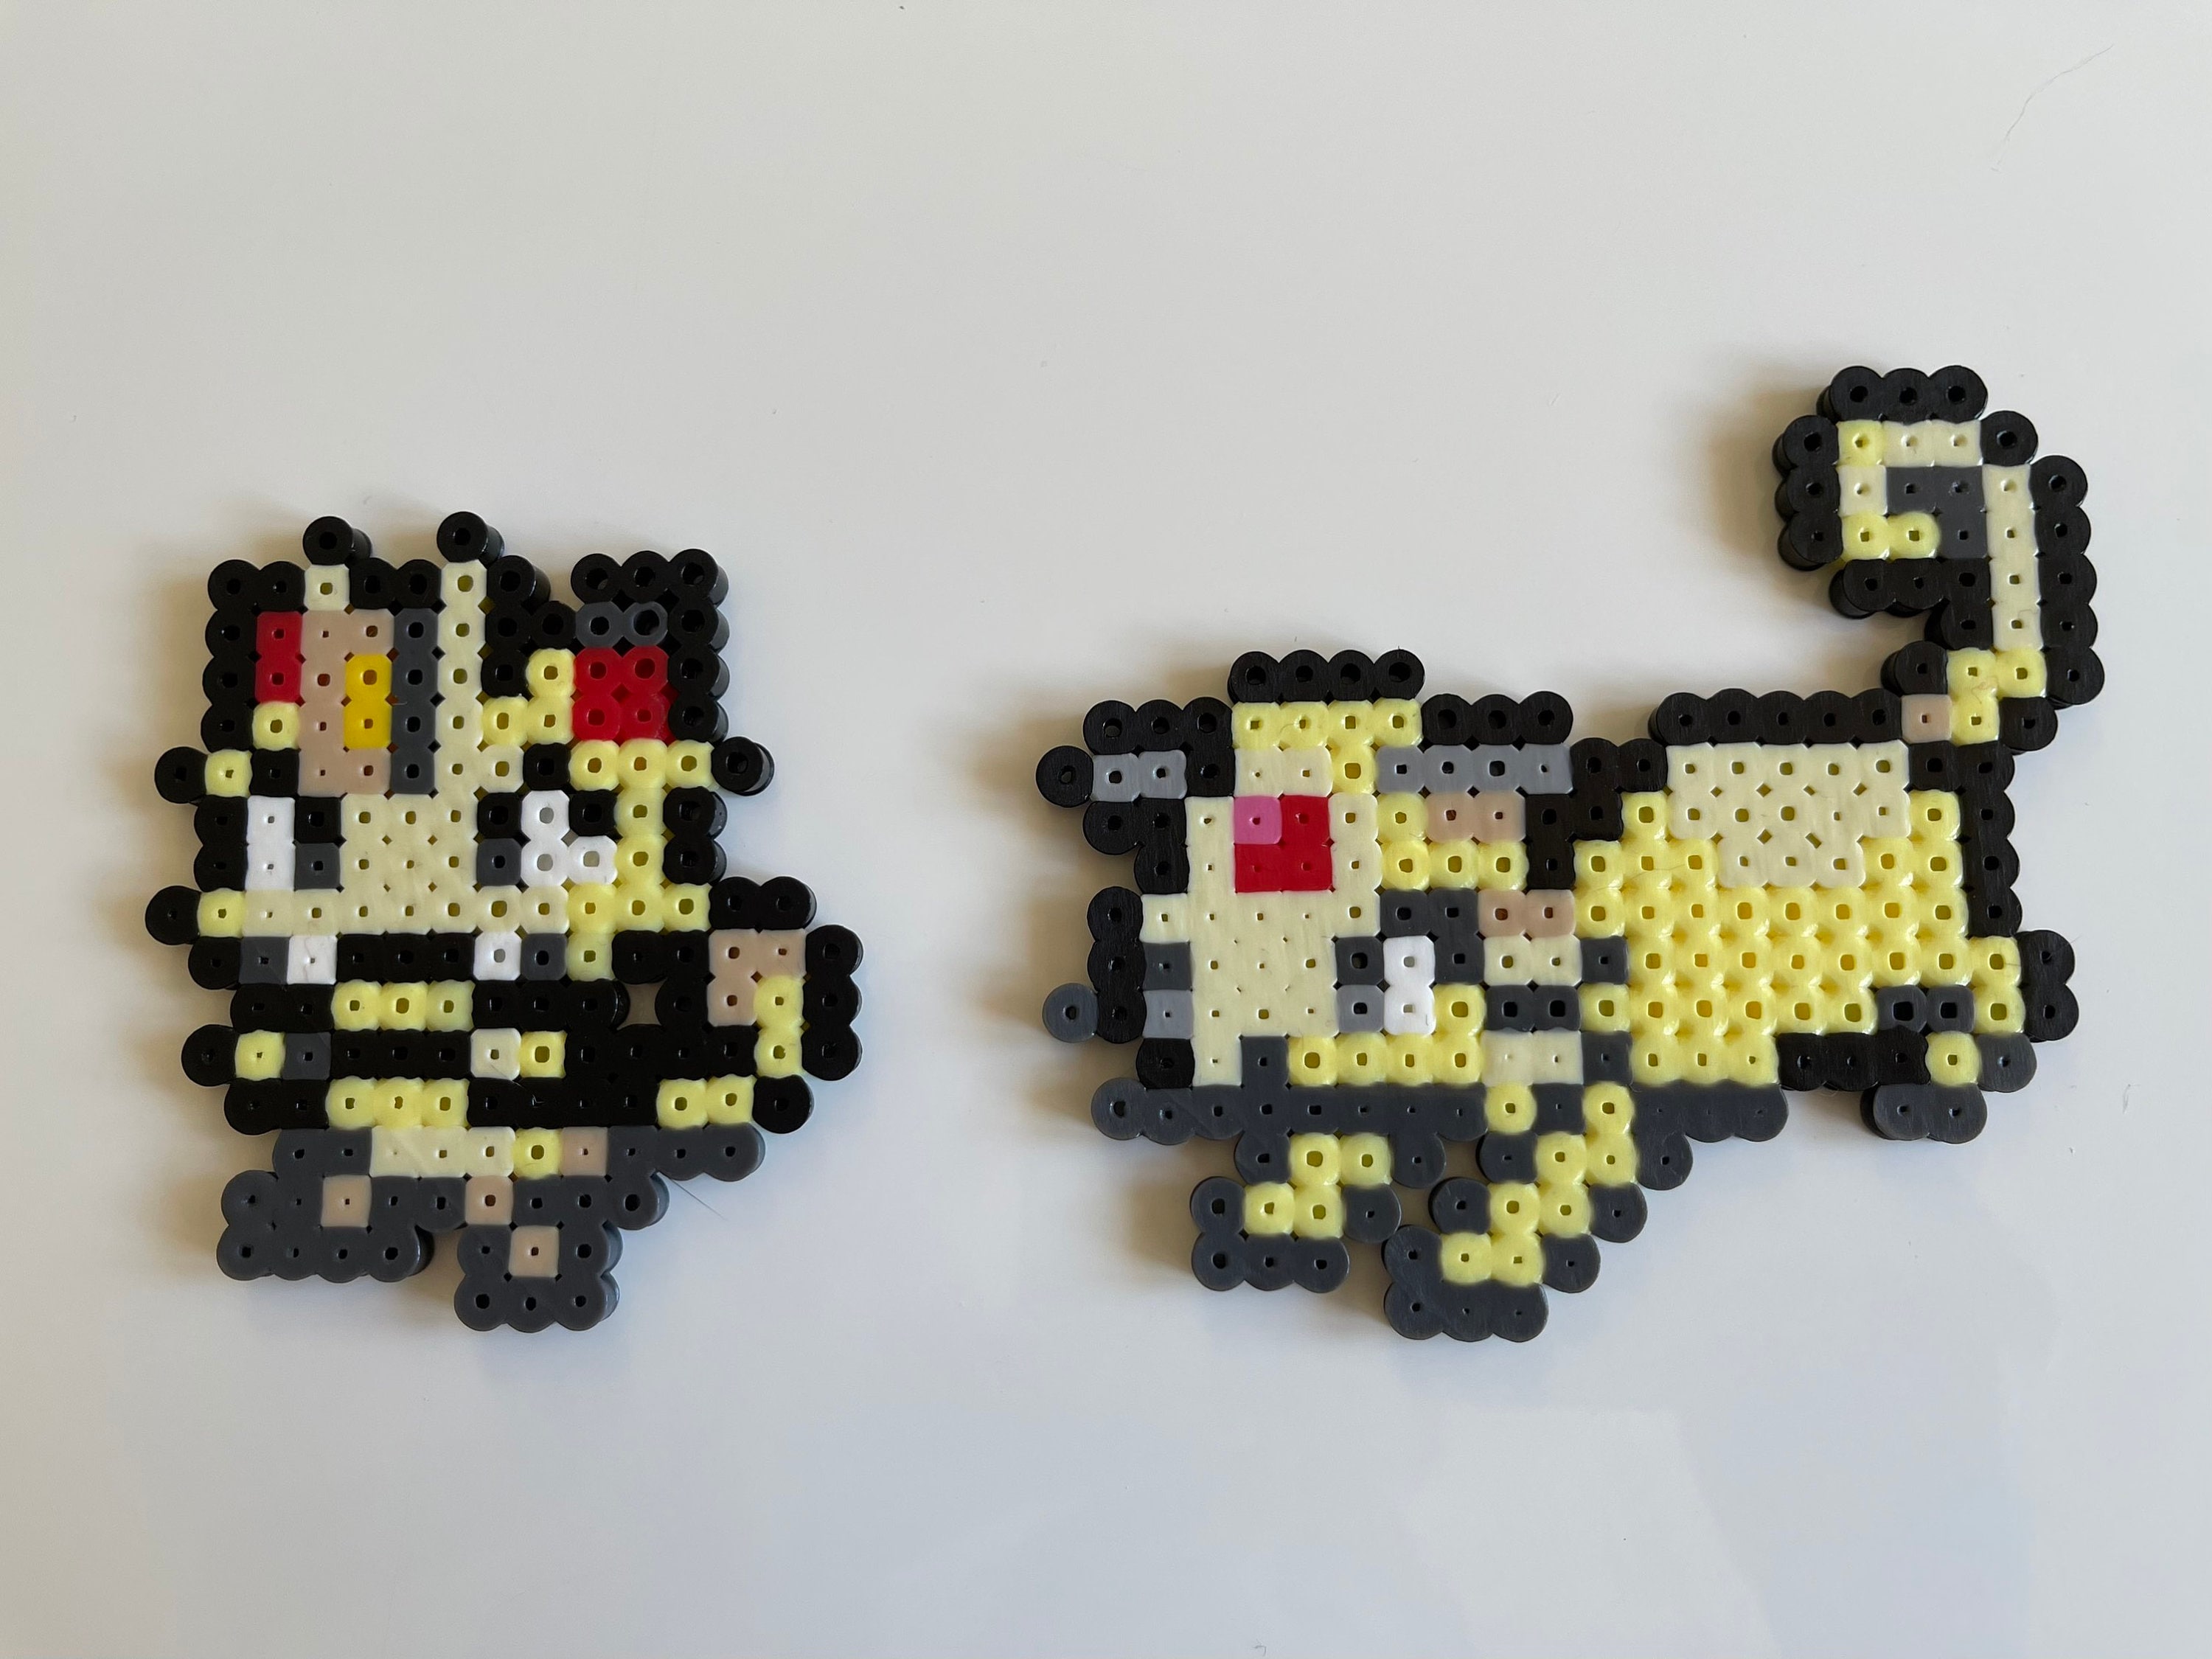 Pokemon Meowth Pixel Art – BRIK